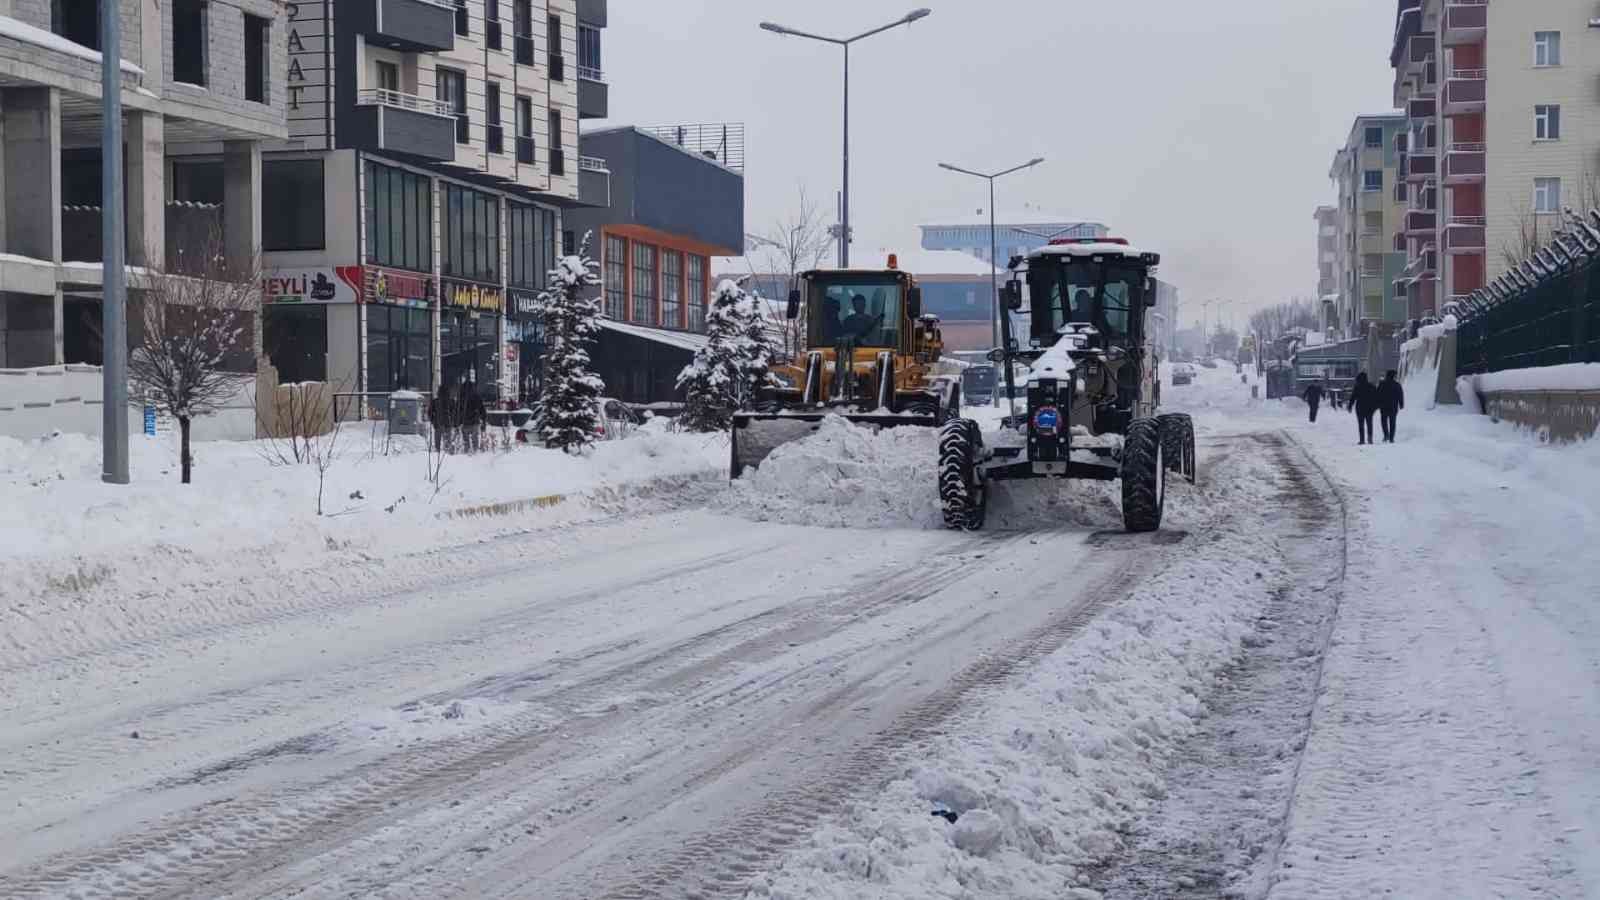 Ağrı Belediyesi kar temizleme çalışmalarına devam ediyor #agri